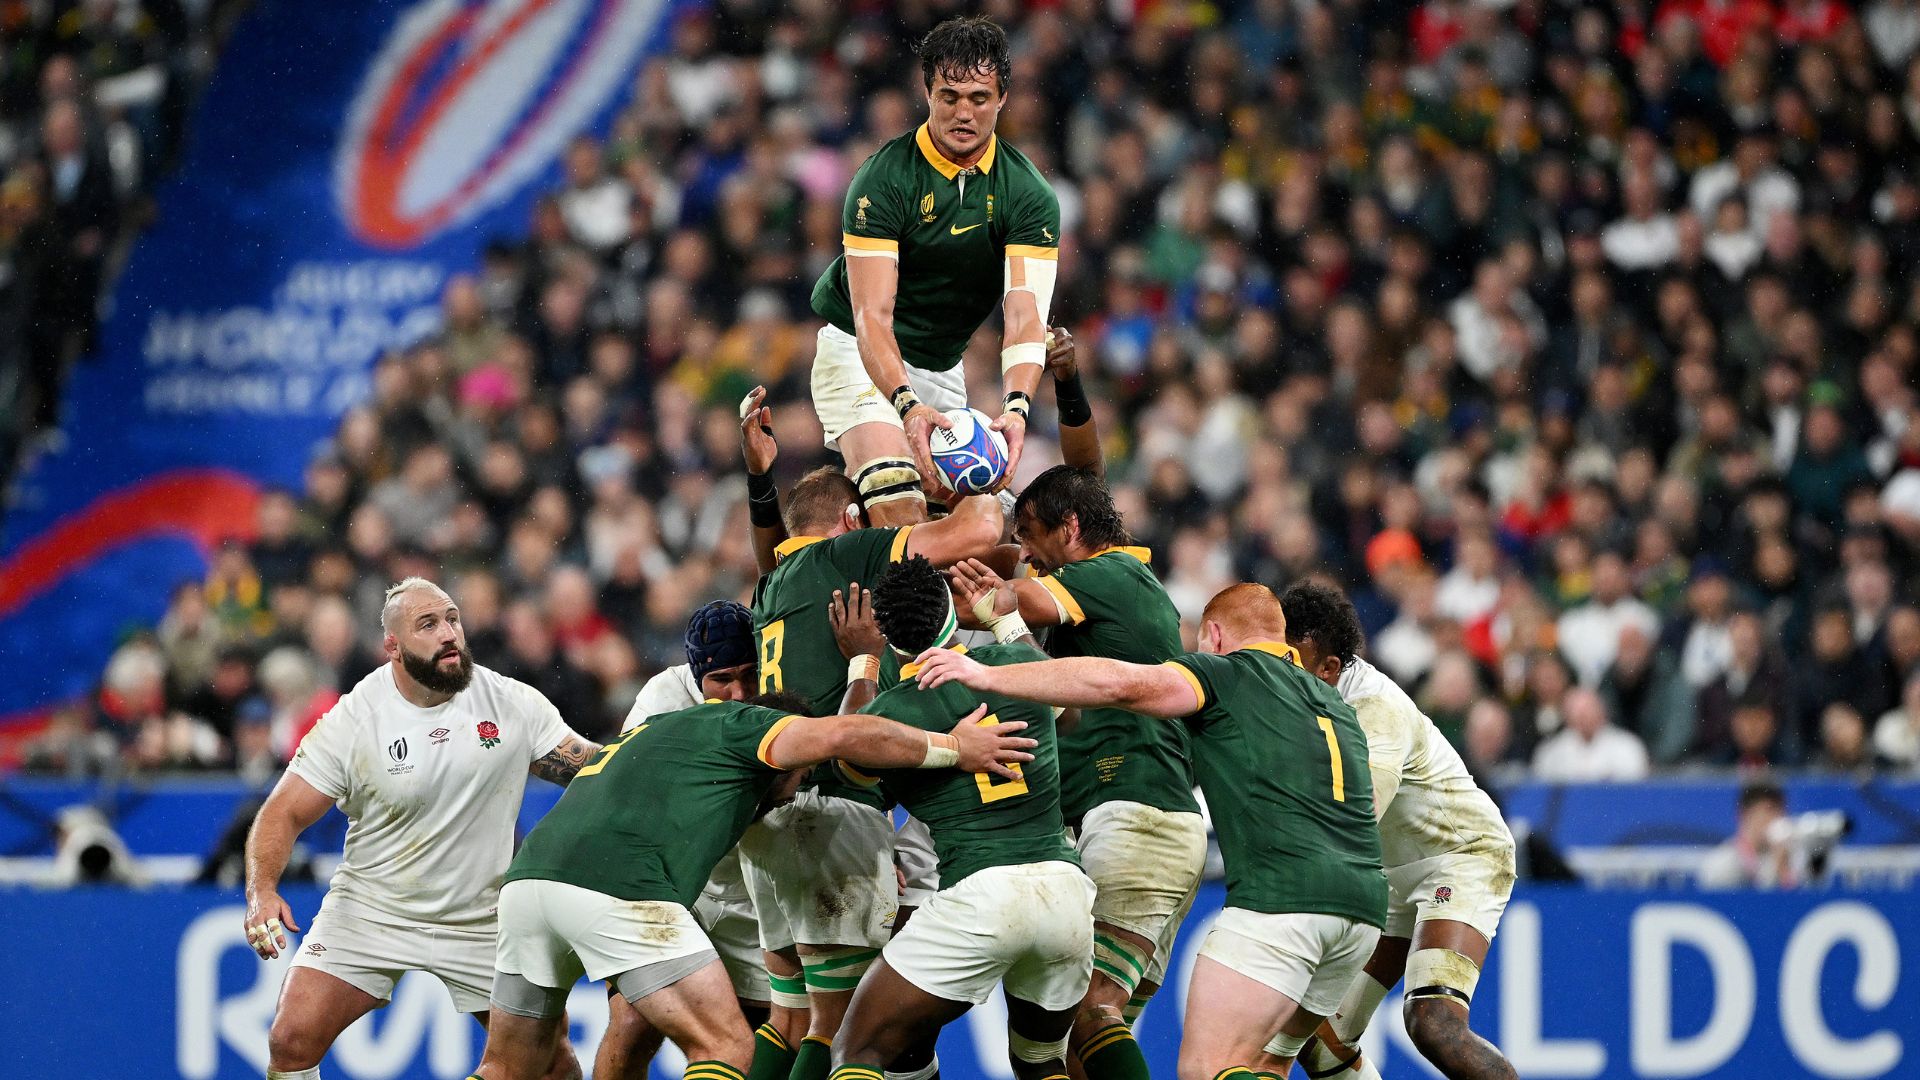 Copa do Mundo de Rugby terá Argentina e Nova Zelândia, Inglaterra e África  do Sul nas semifinais – Confederação Brasileira de Rugby